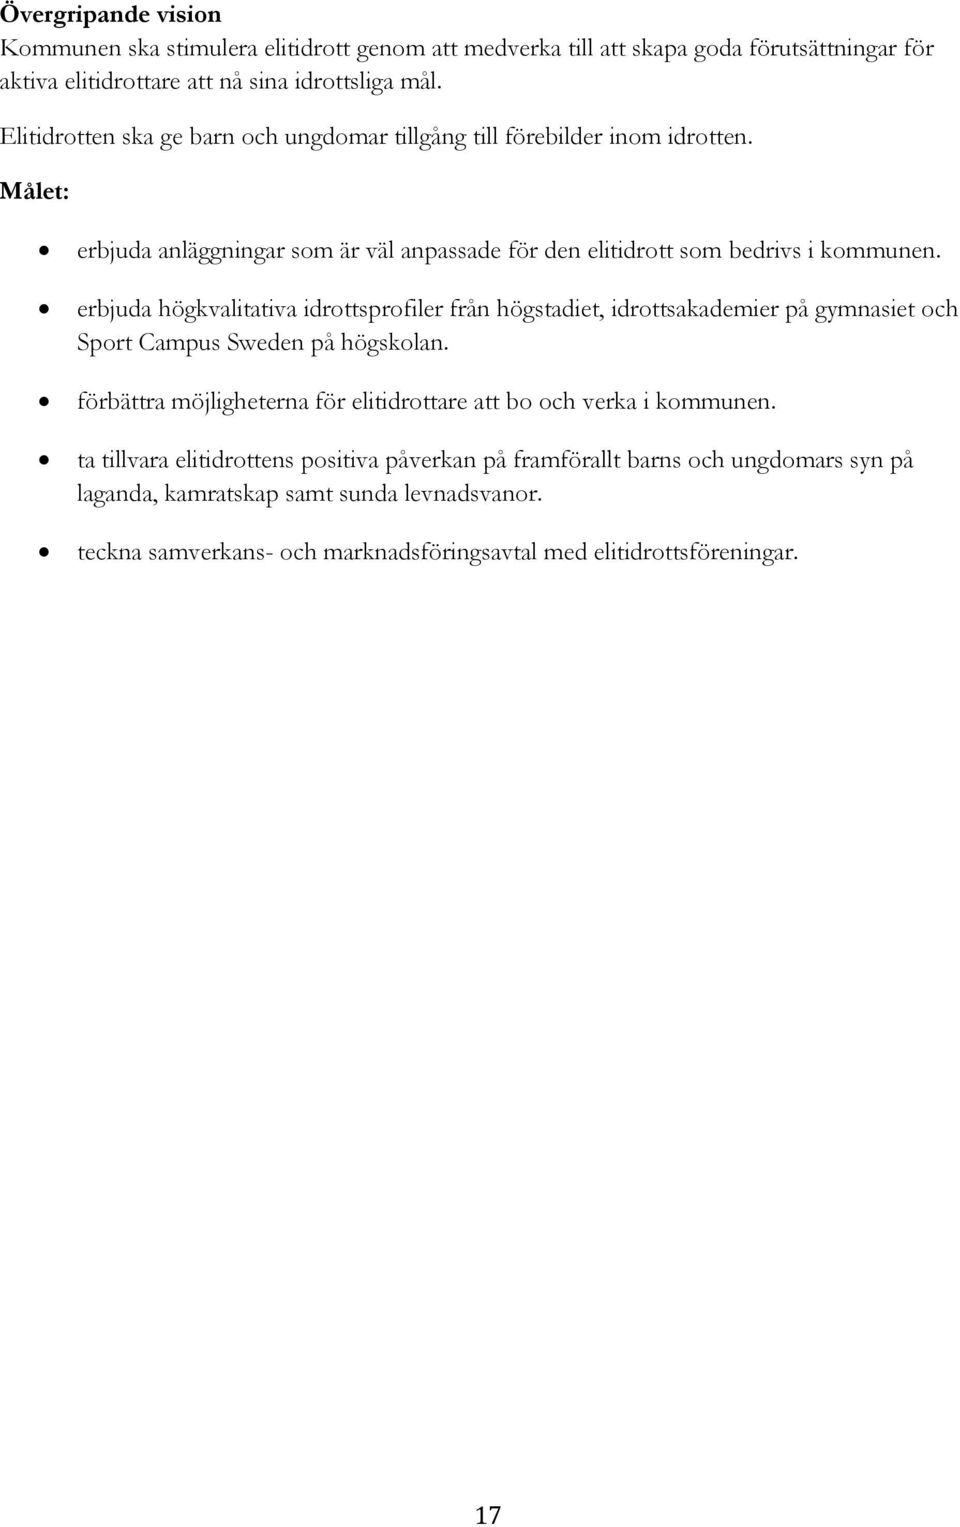 erbjuda högkvalitativa idrottsprofiler från högstadiet, idrottsakademier på gymnasiet och Sport Campus Sweden på högskolan.